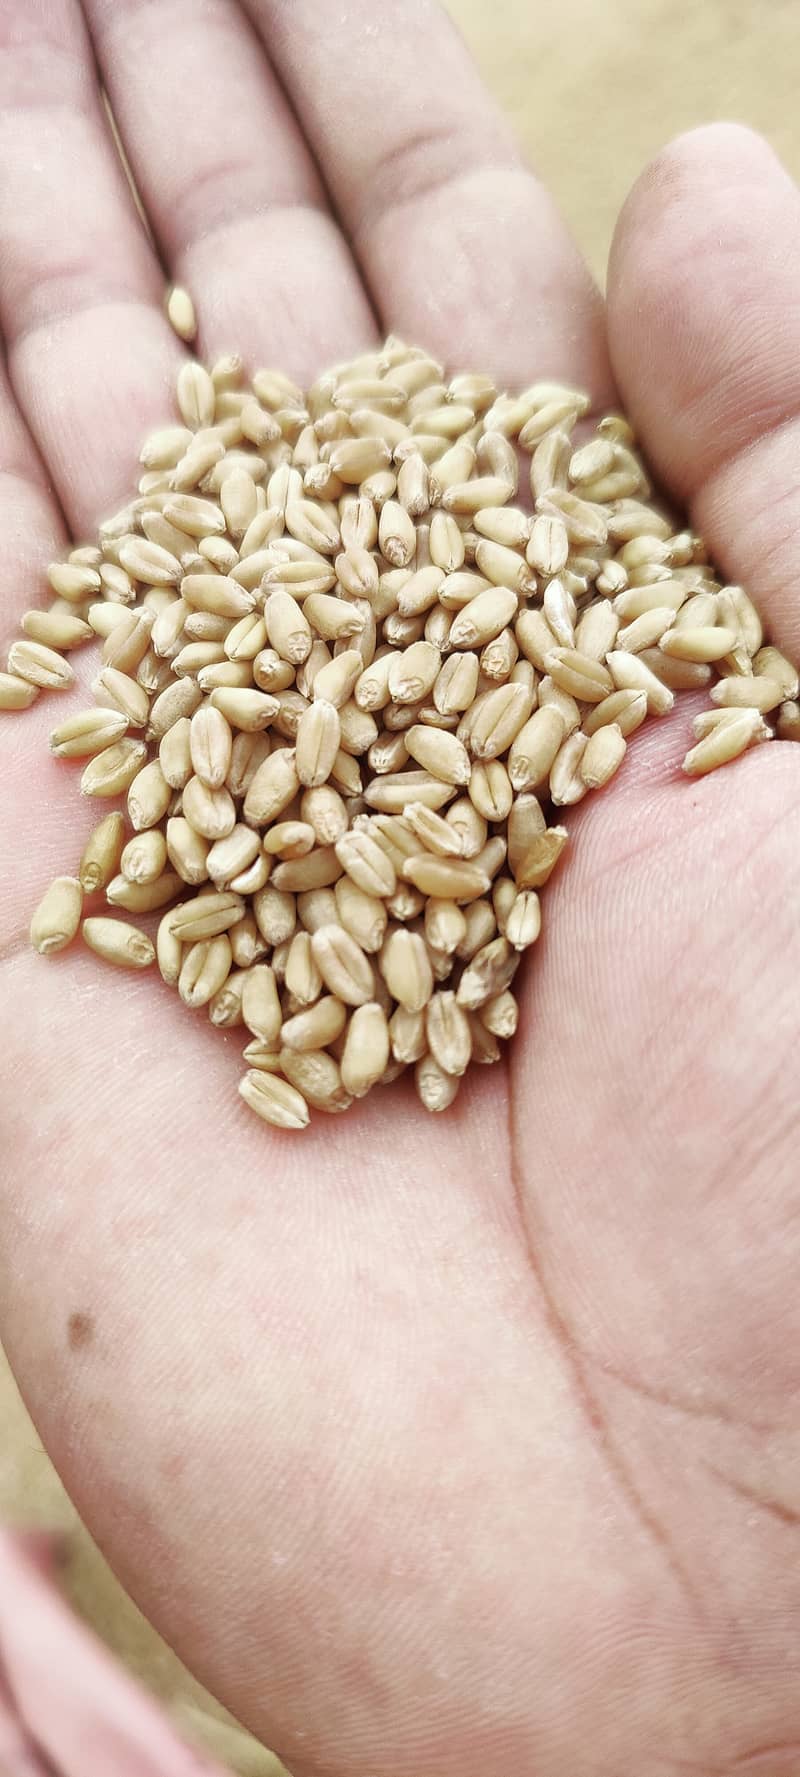 Wheat gandum mota dana our own farms 1